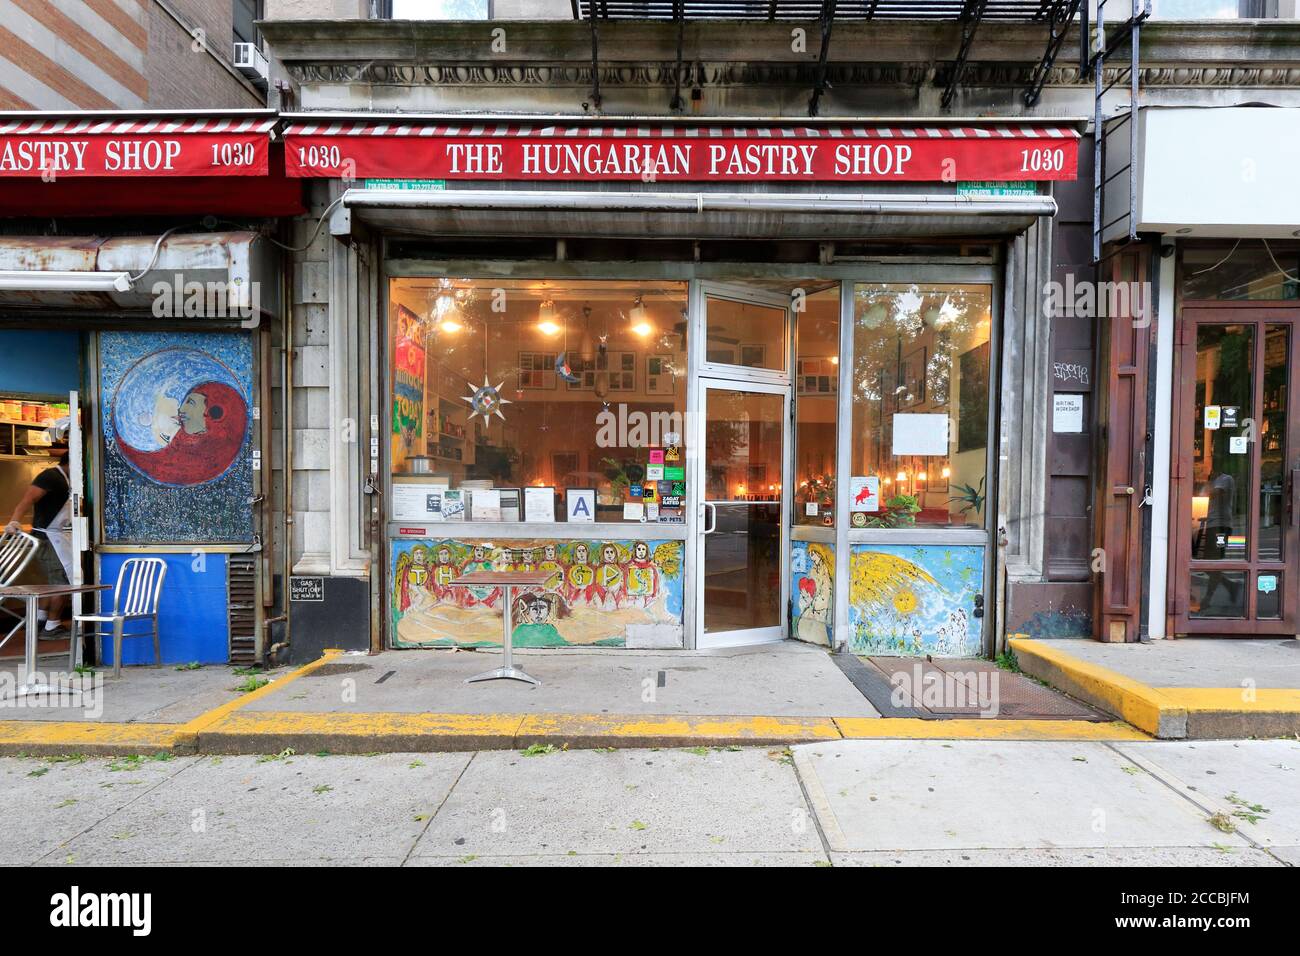 The Hungarian Pastry Shop, 1030 Amsterdam Ave, New York, NYC boutique photo d'une pâtisserie et d'un café à Morningside Heights. Banque D'Images